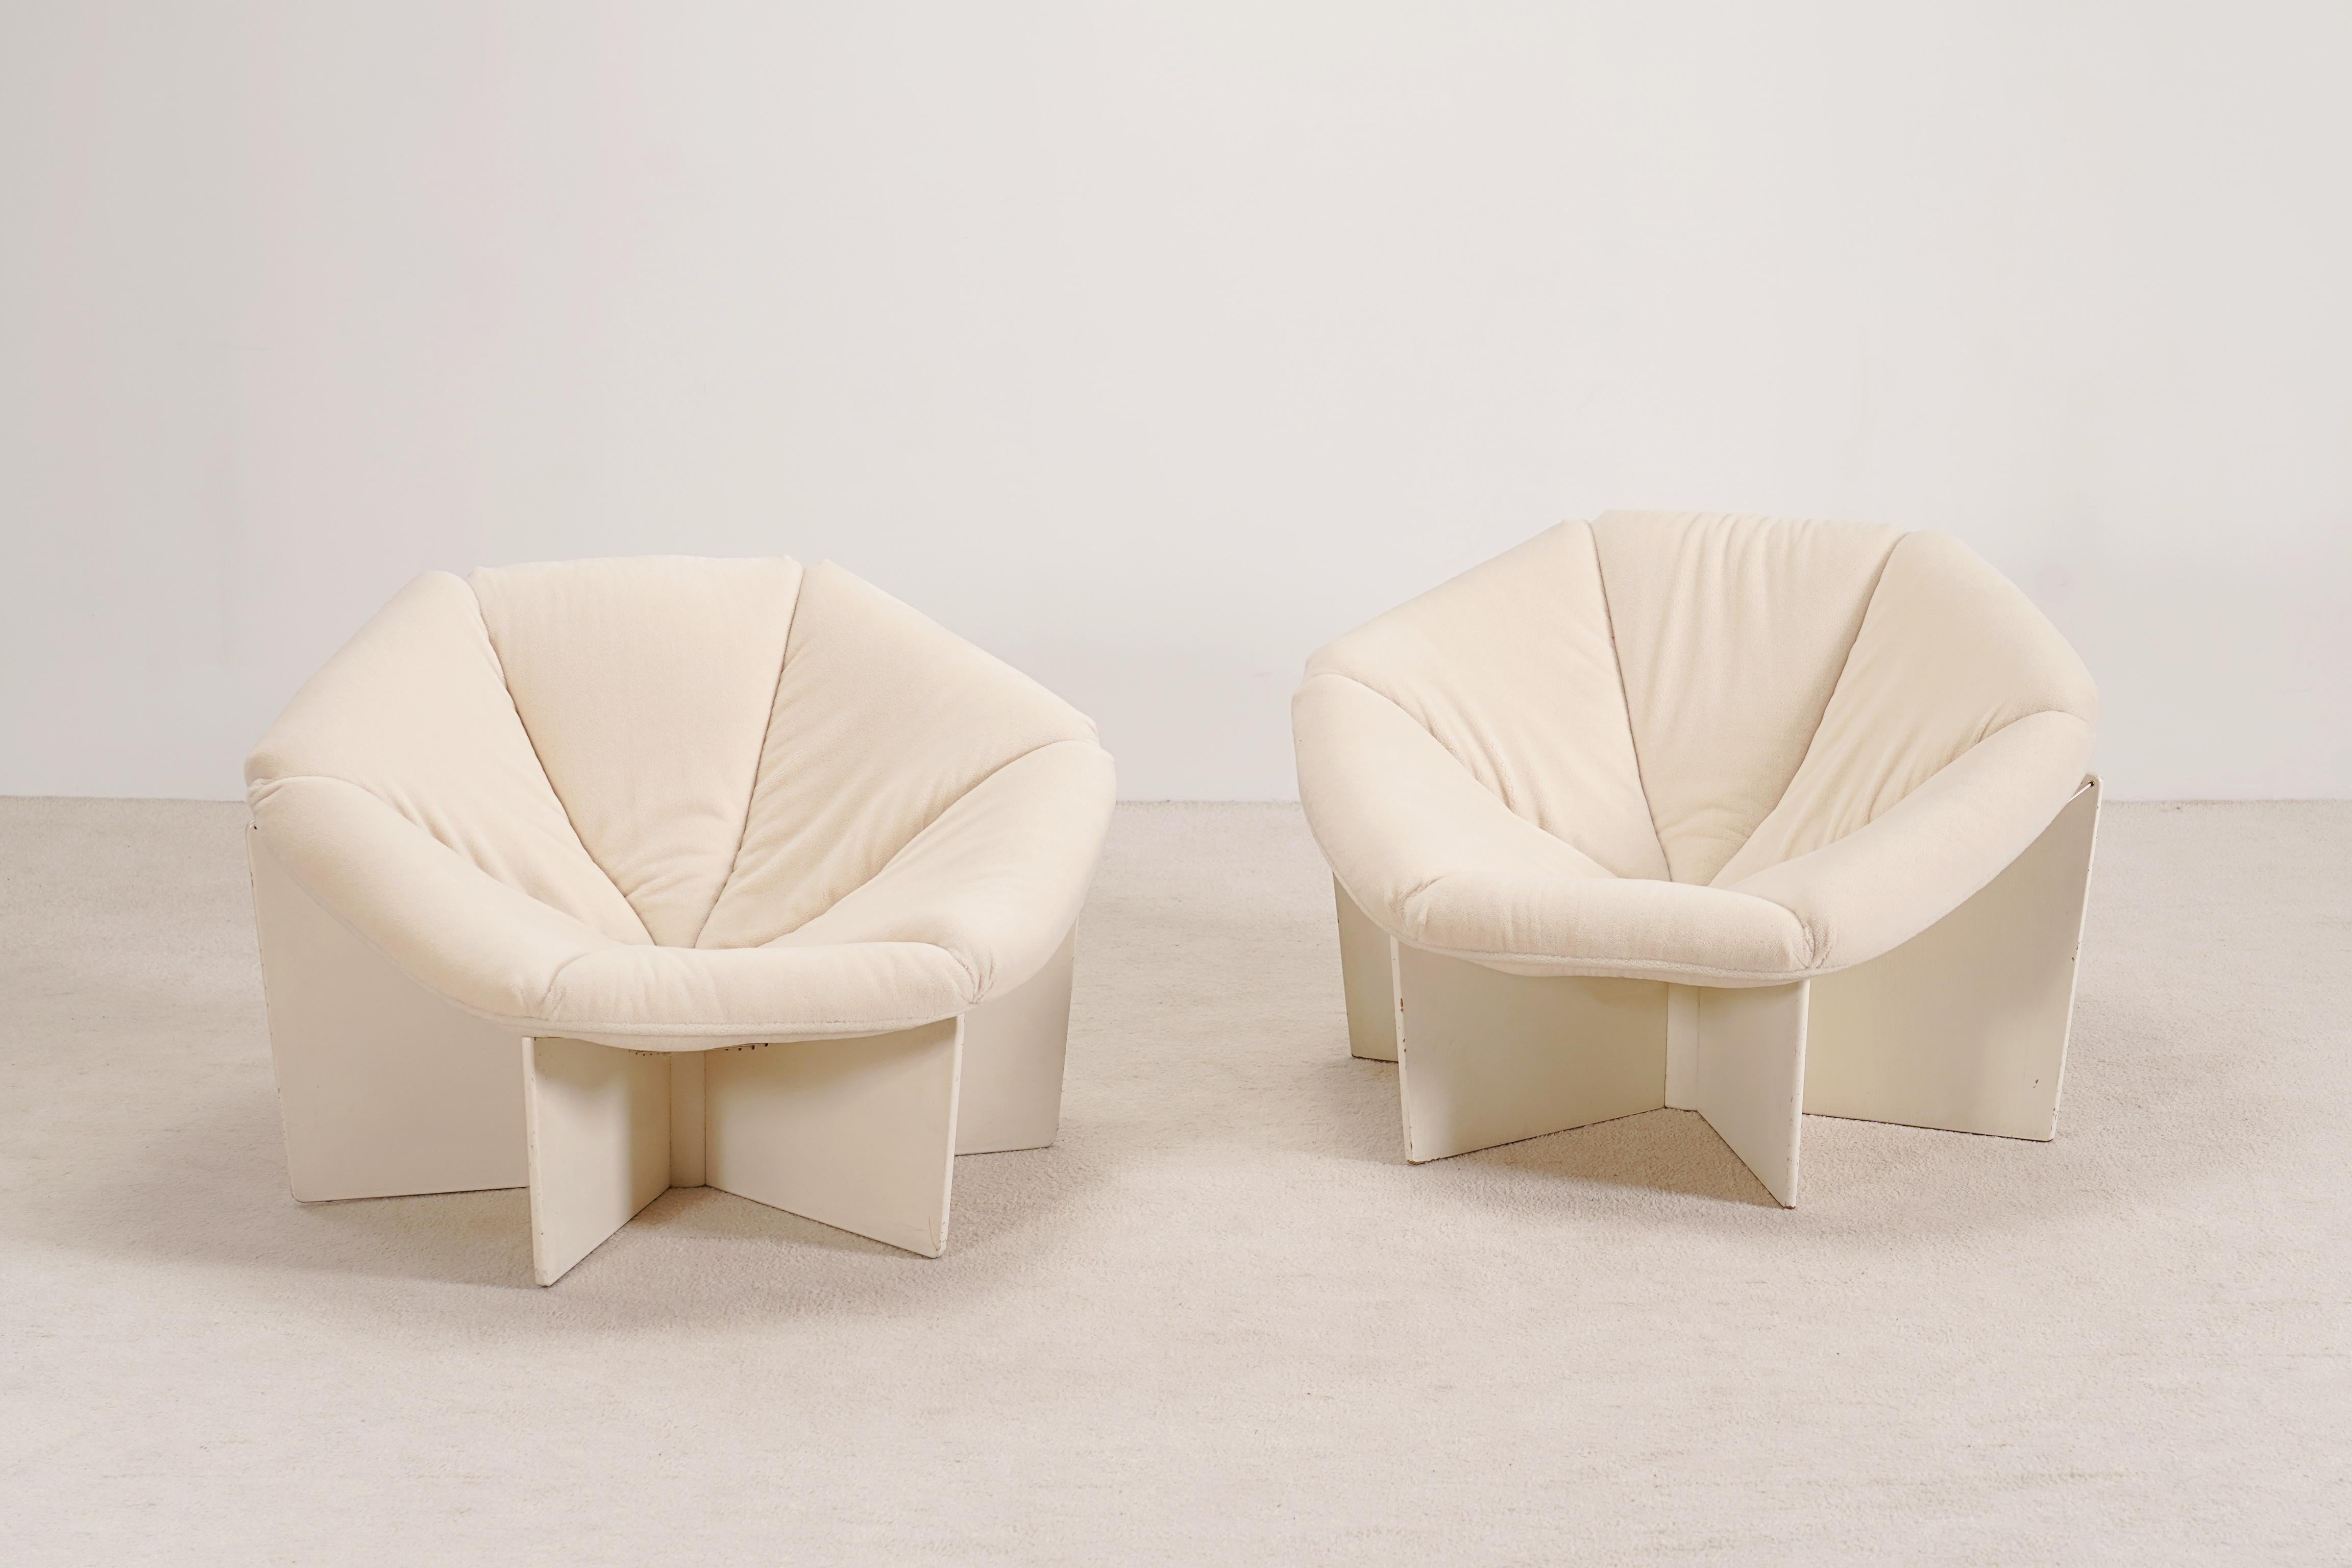 Exceptionnelle et rare paire de chaises longues modèle F678, également connue sous le nom de Spider Lounge Chair, conçue par le designer français Pierre Paulin et fabriquée par Artifort Furniture Company of the Netherlands, 1966.

La forme